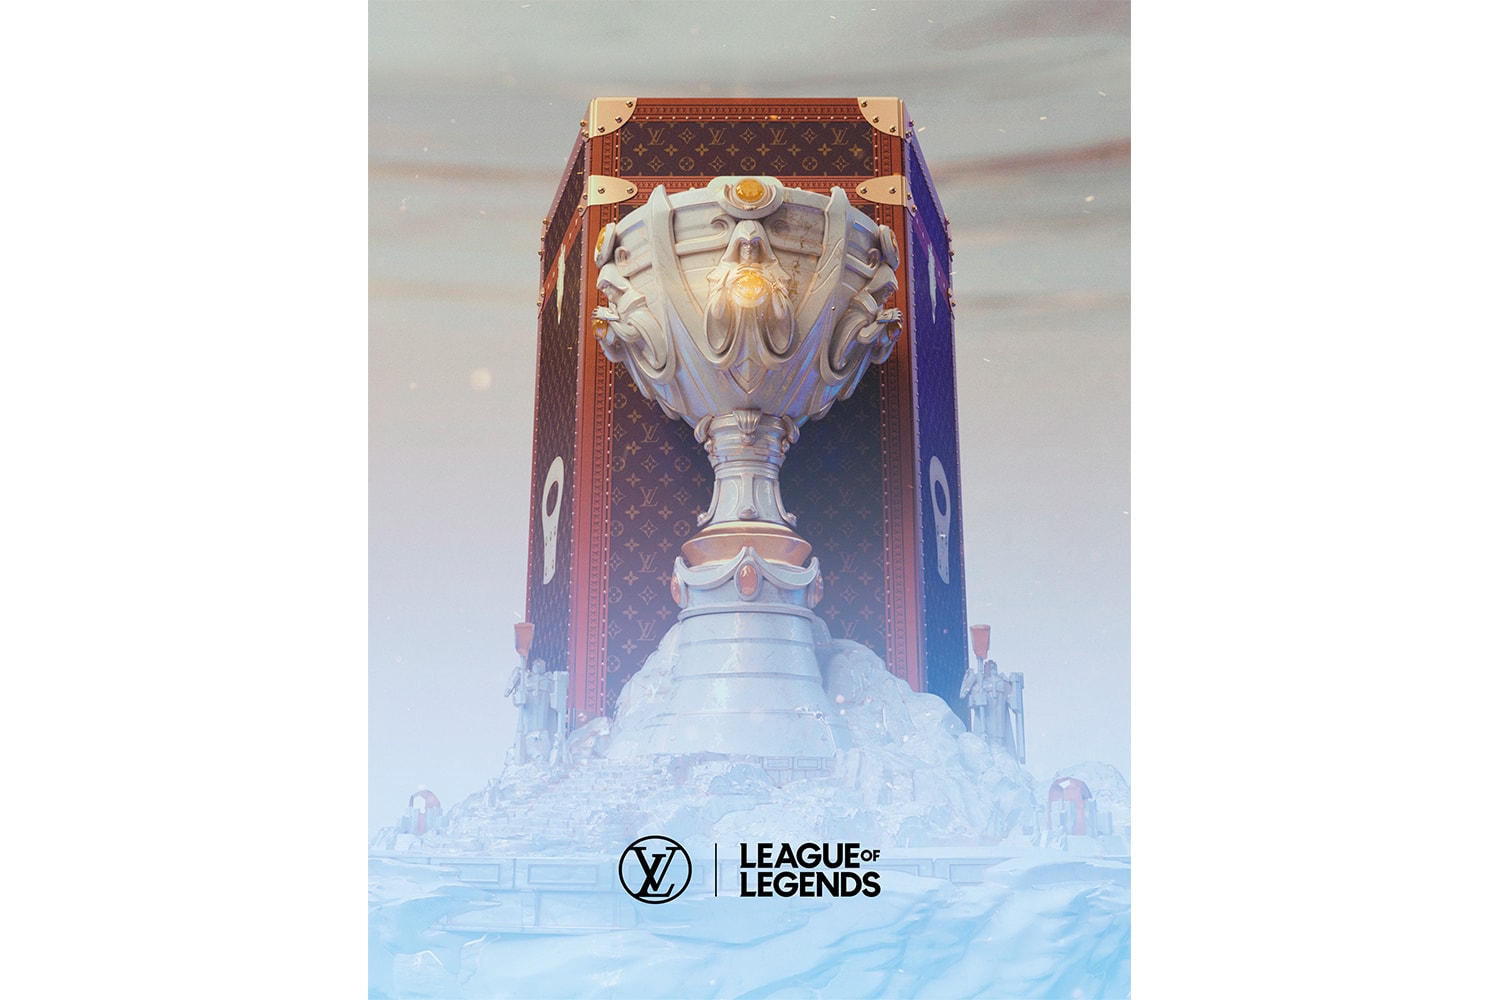 루이 비통이 2019 롤드컵 공식 파트너로 나섰다, 트로피 및 스킨 디자인 